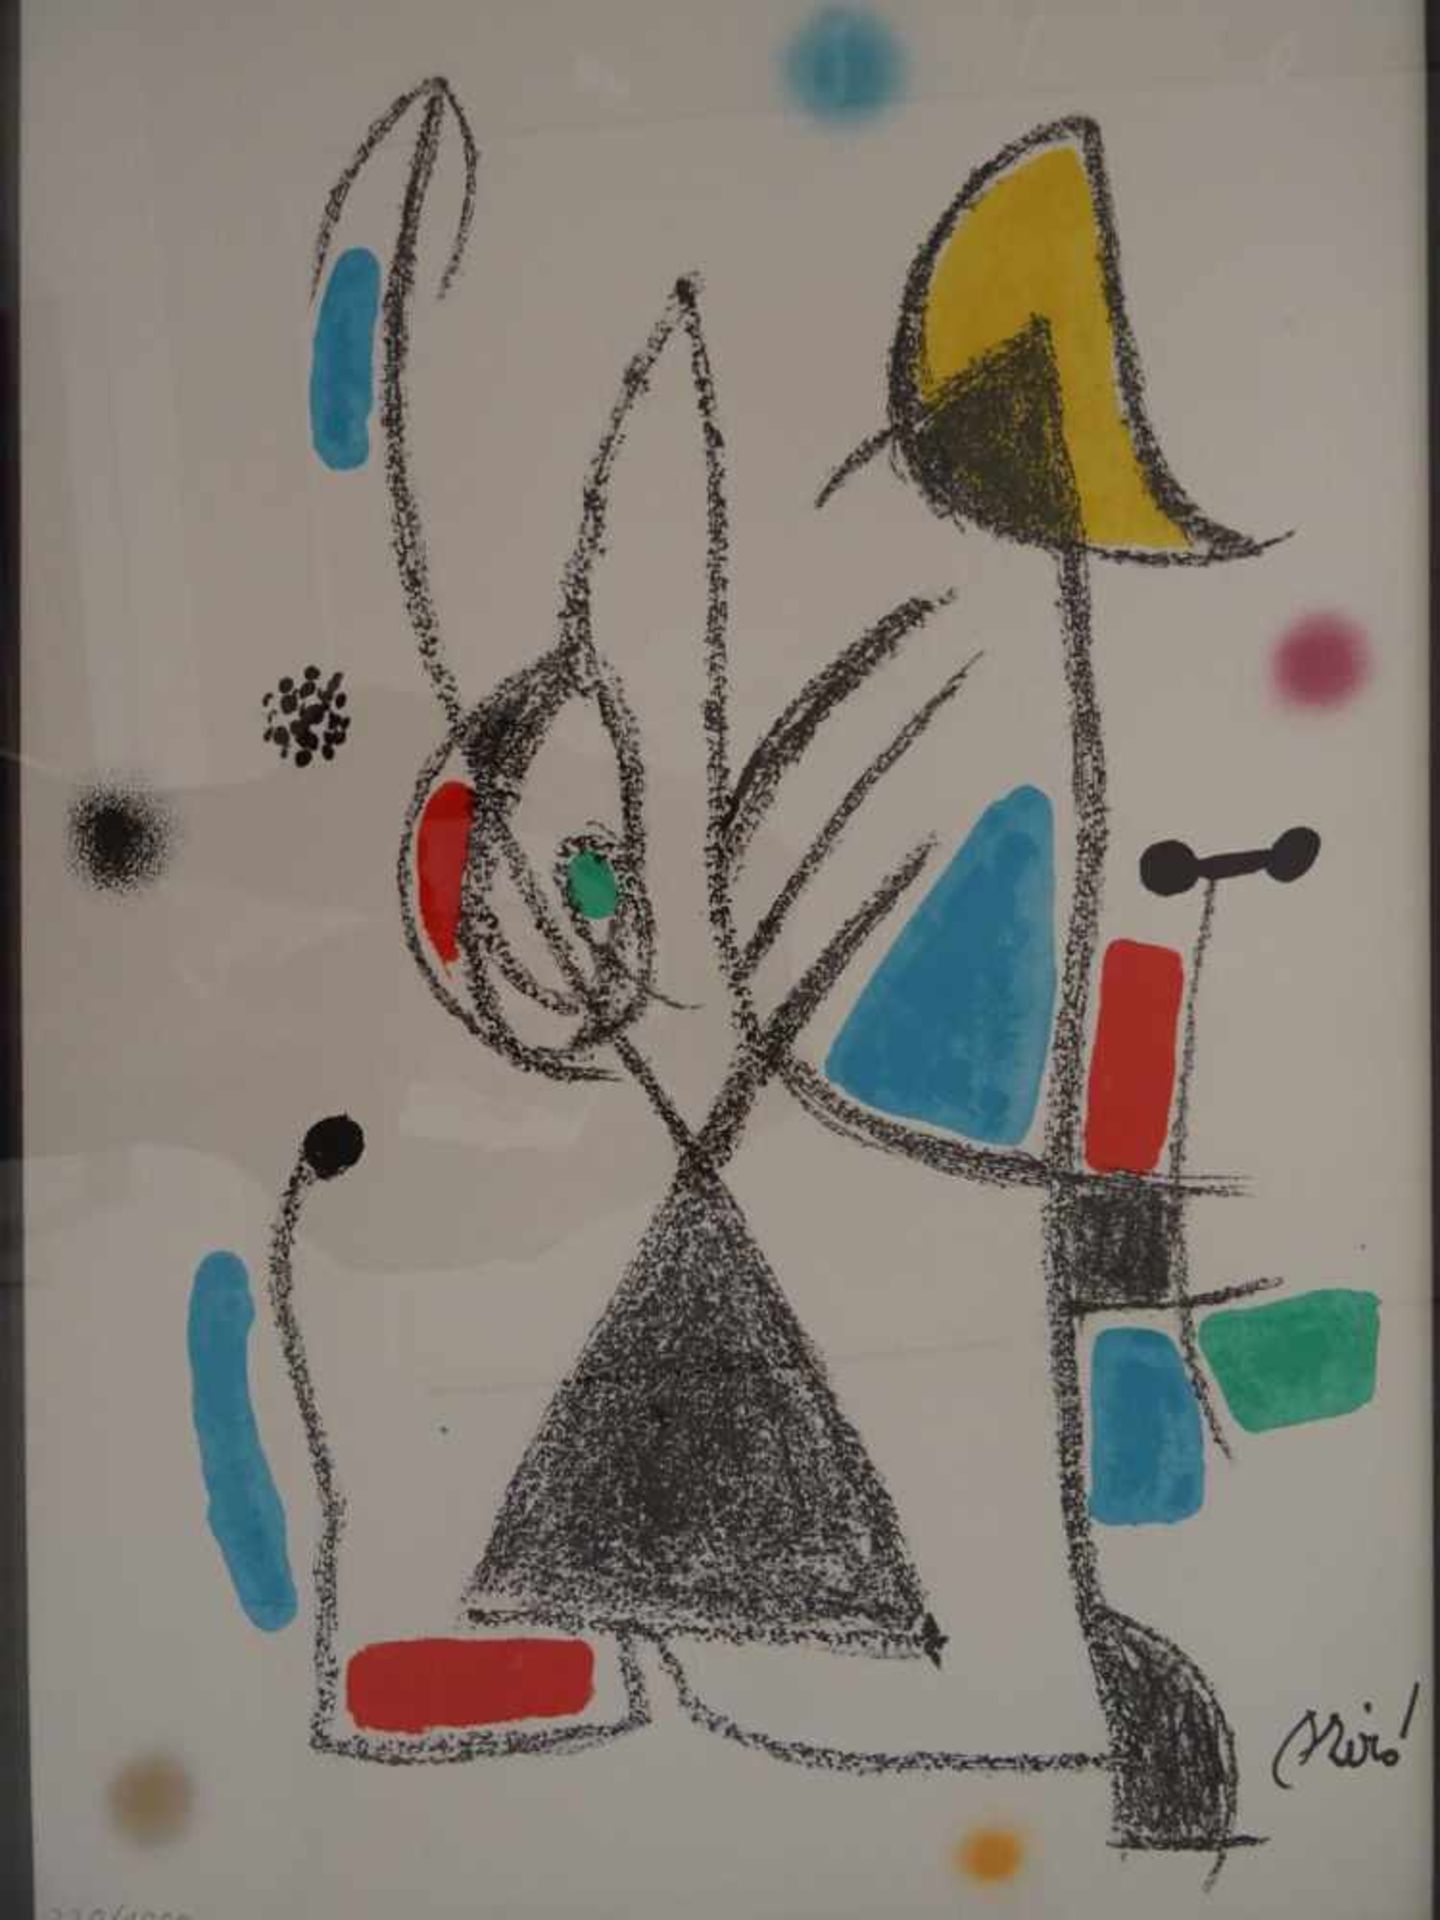 Miró, Joan(Barcelona 1893 - 1983 Palma). Maravillas con variaciones acrósticas en el jardin de Miró. - Bild 2 aus 4